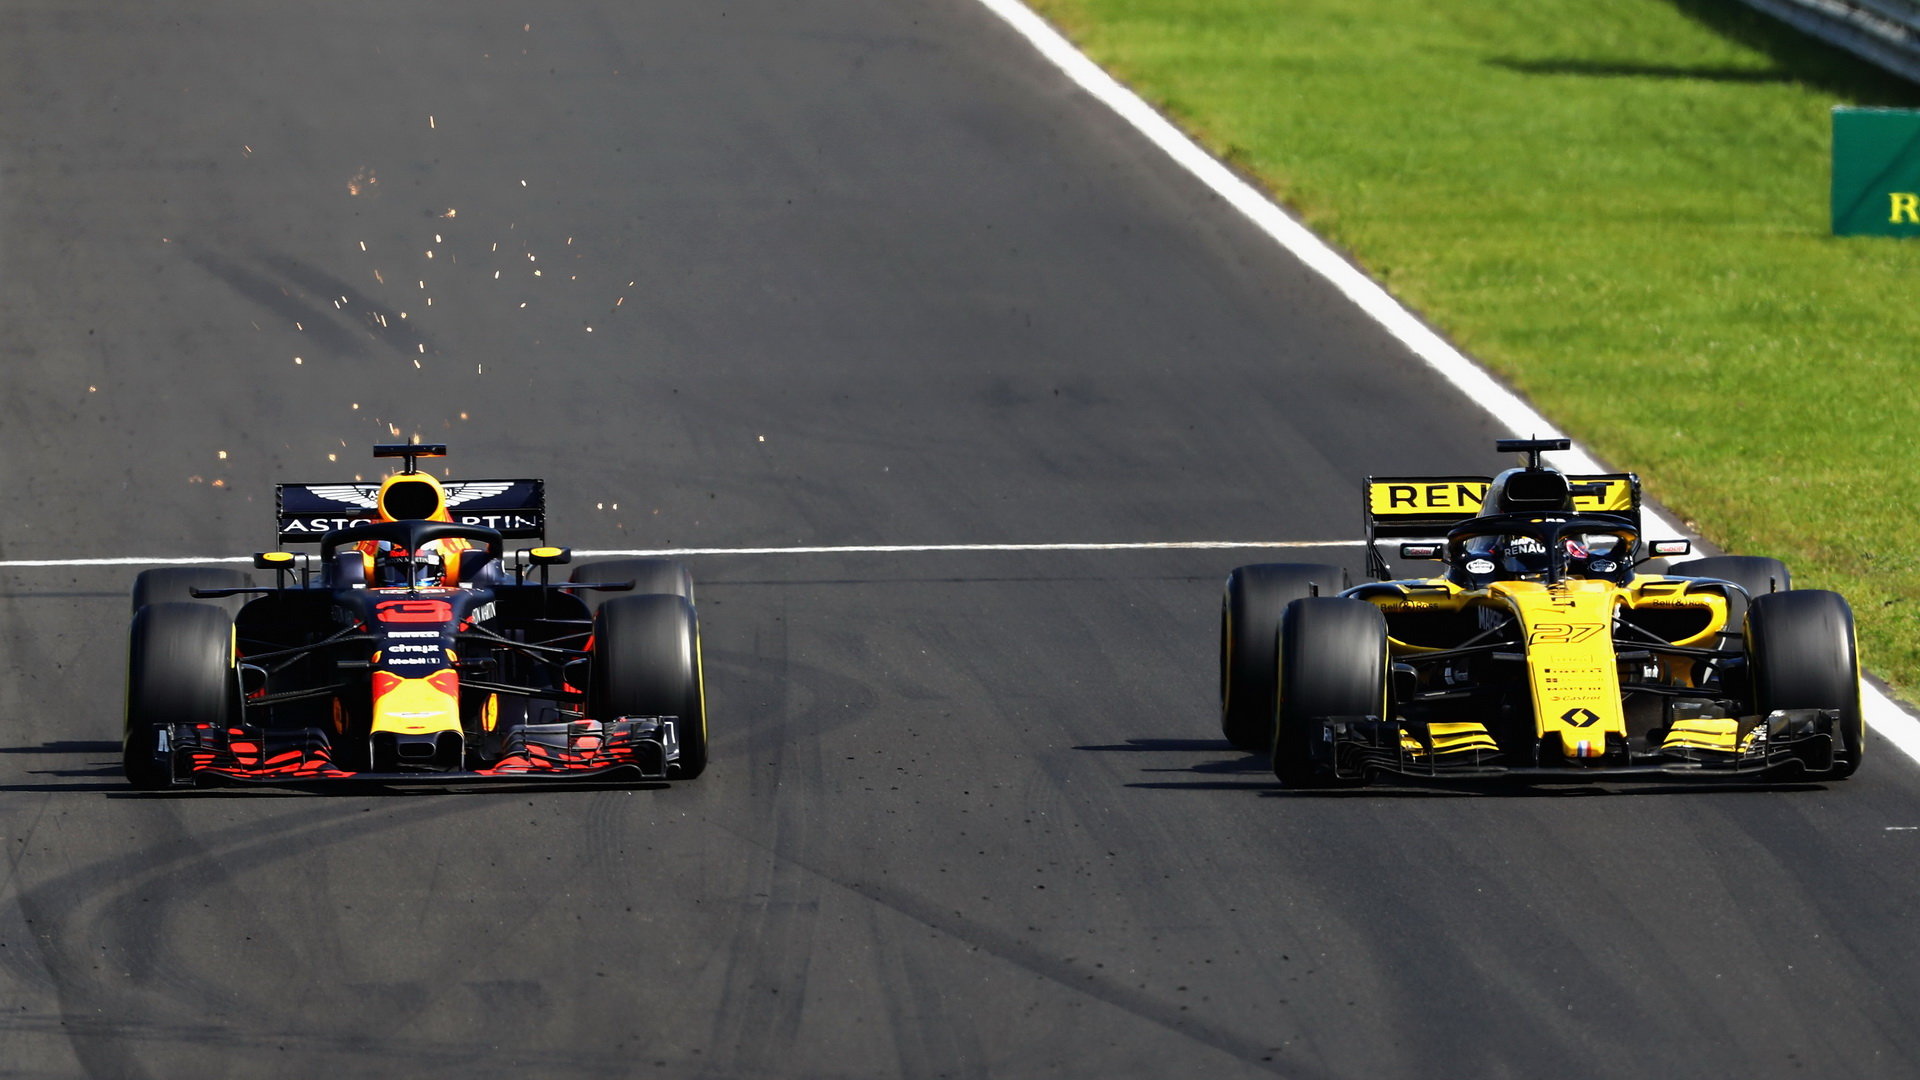 Daniel Ricciardo (vlevo) v souboji s Nicem Hülkenbergem na závodním okruhu